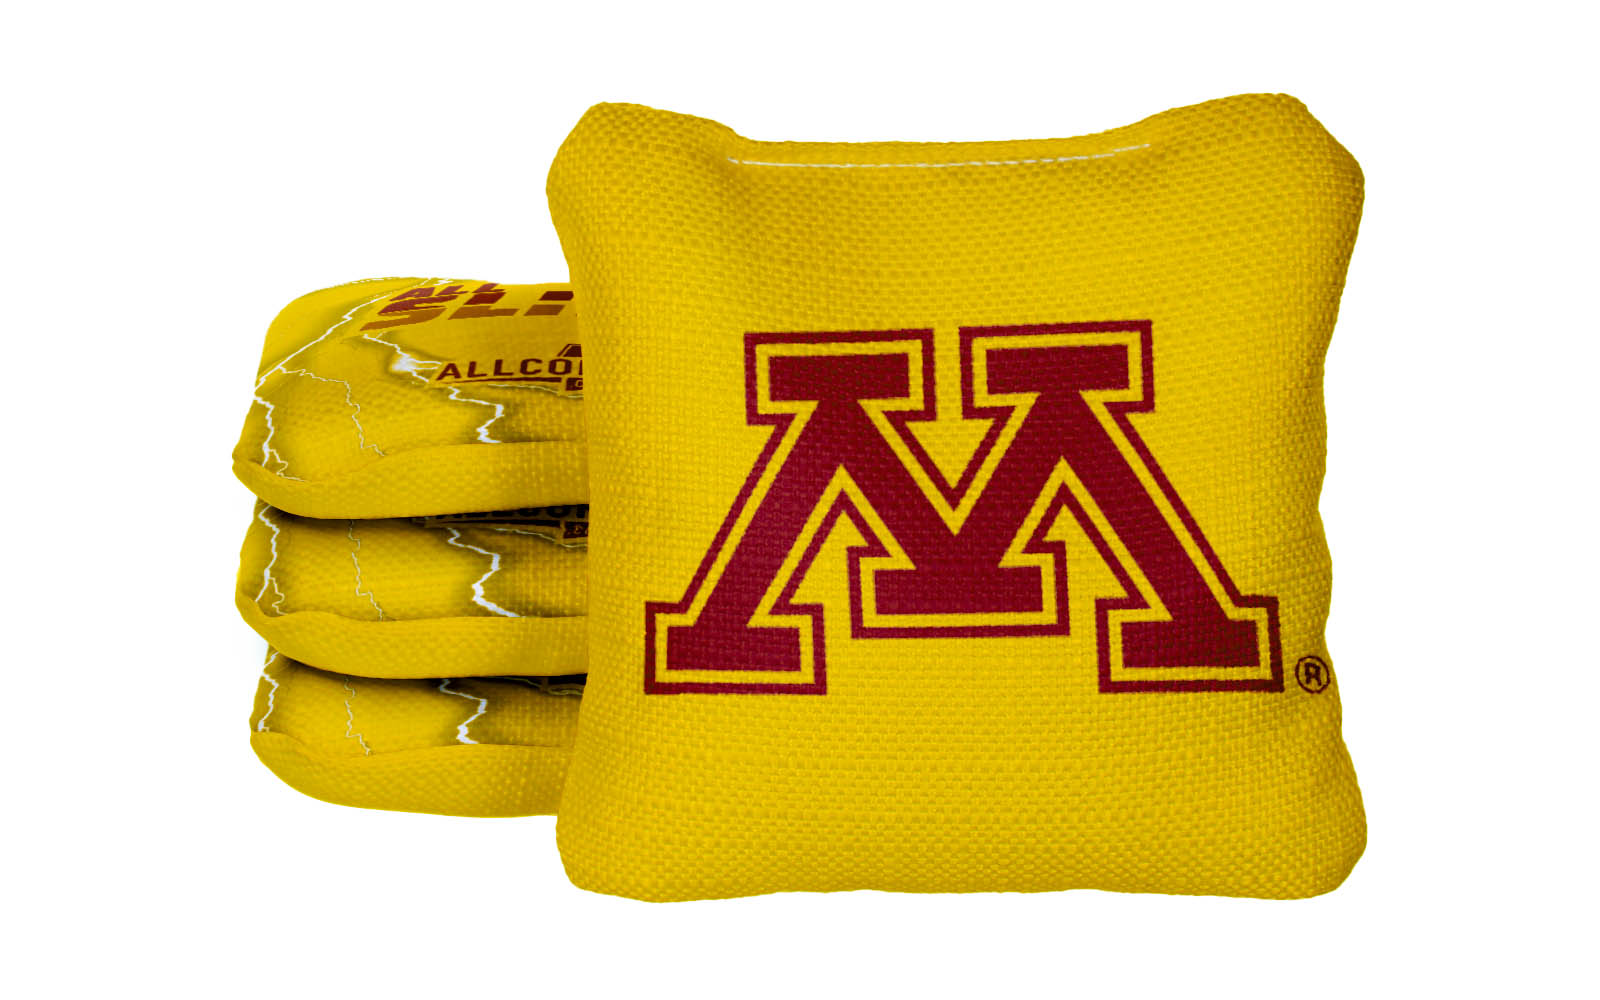 Officially Licensed Collegiate Cornhole Bags - AllCornhole All-Slide 2.0 - Set of 4 - University of Minnesota